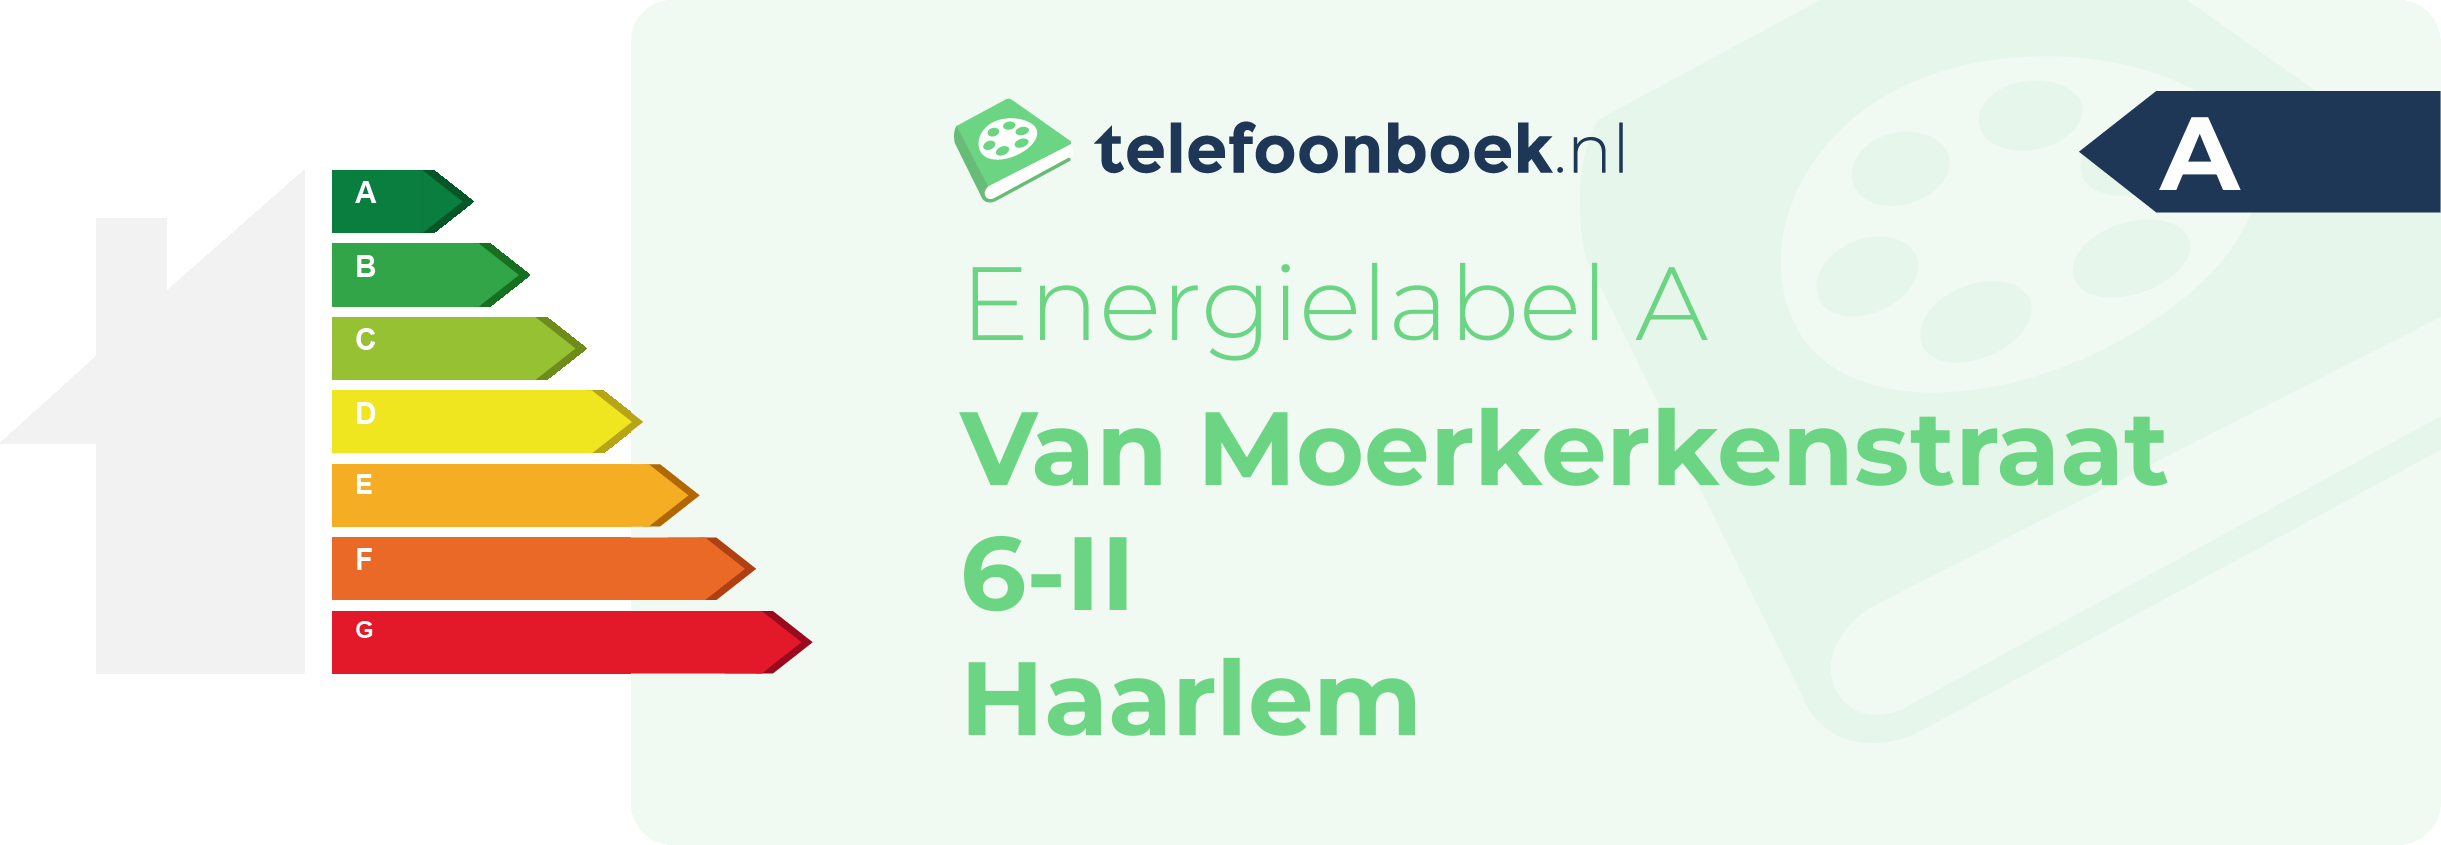 Energielabel Van Moerkerkenstraat 6-II Haarlem